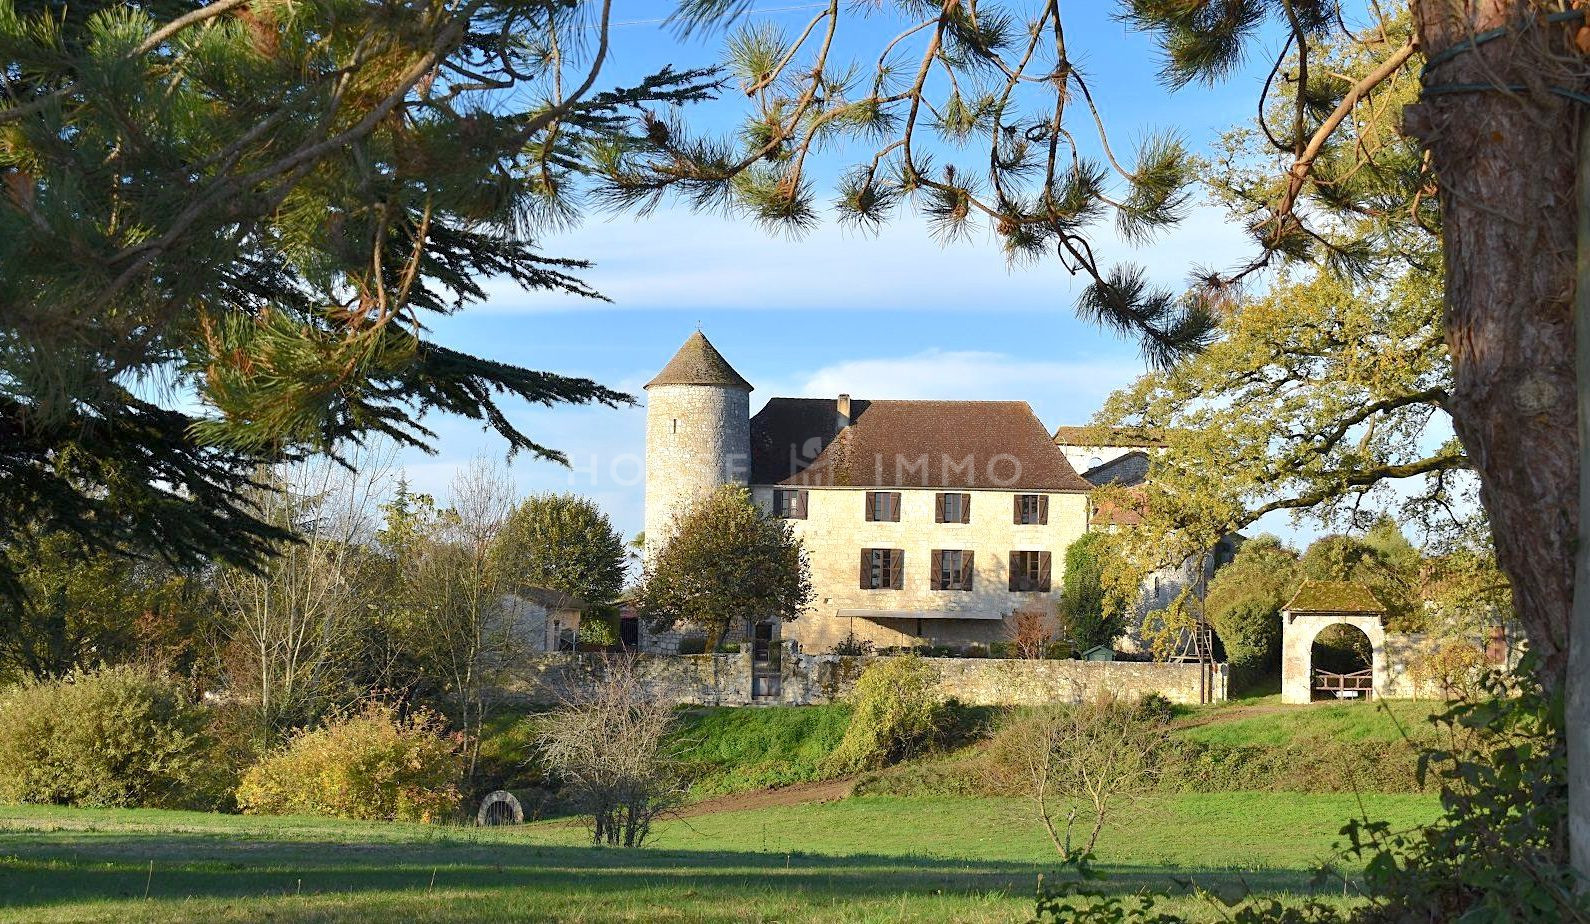 1615973408 VM1712 3 original - Château de 340m² sur 3.5ha à 15 min de Bergerac